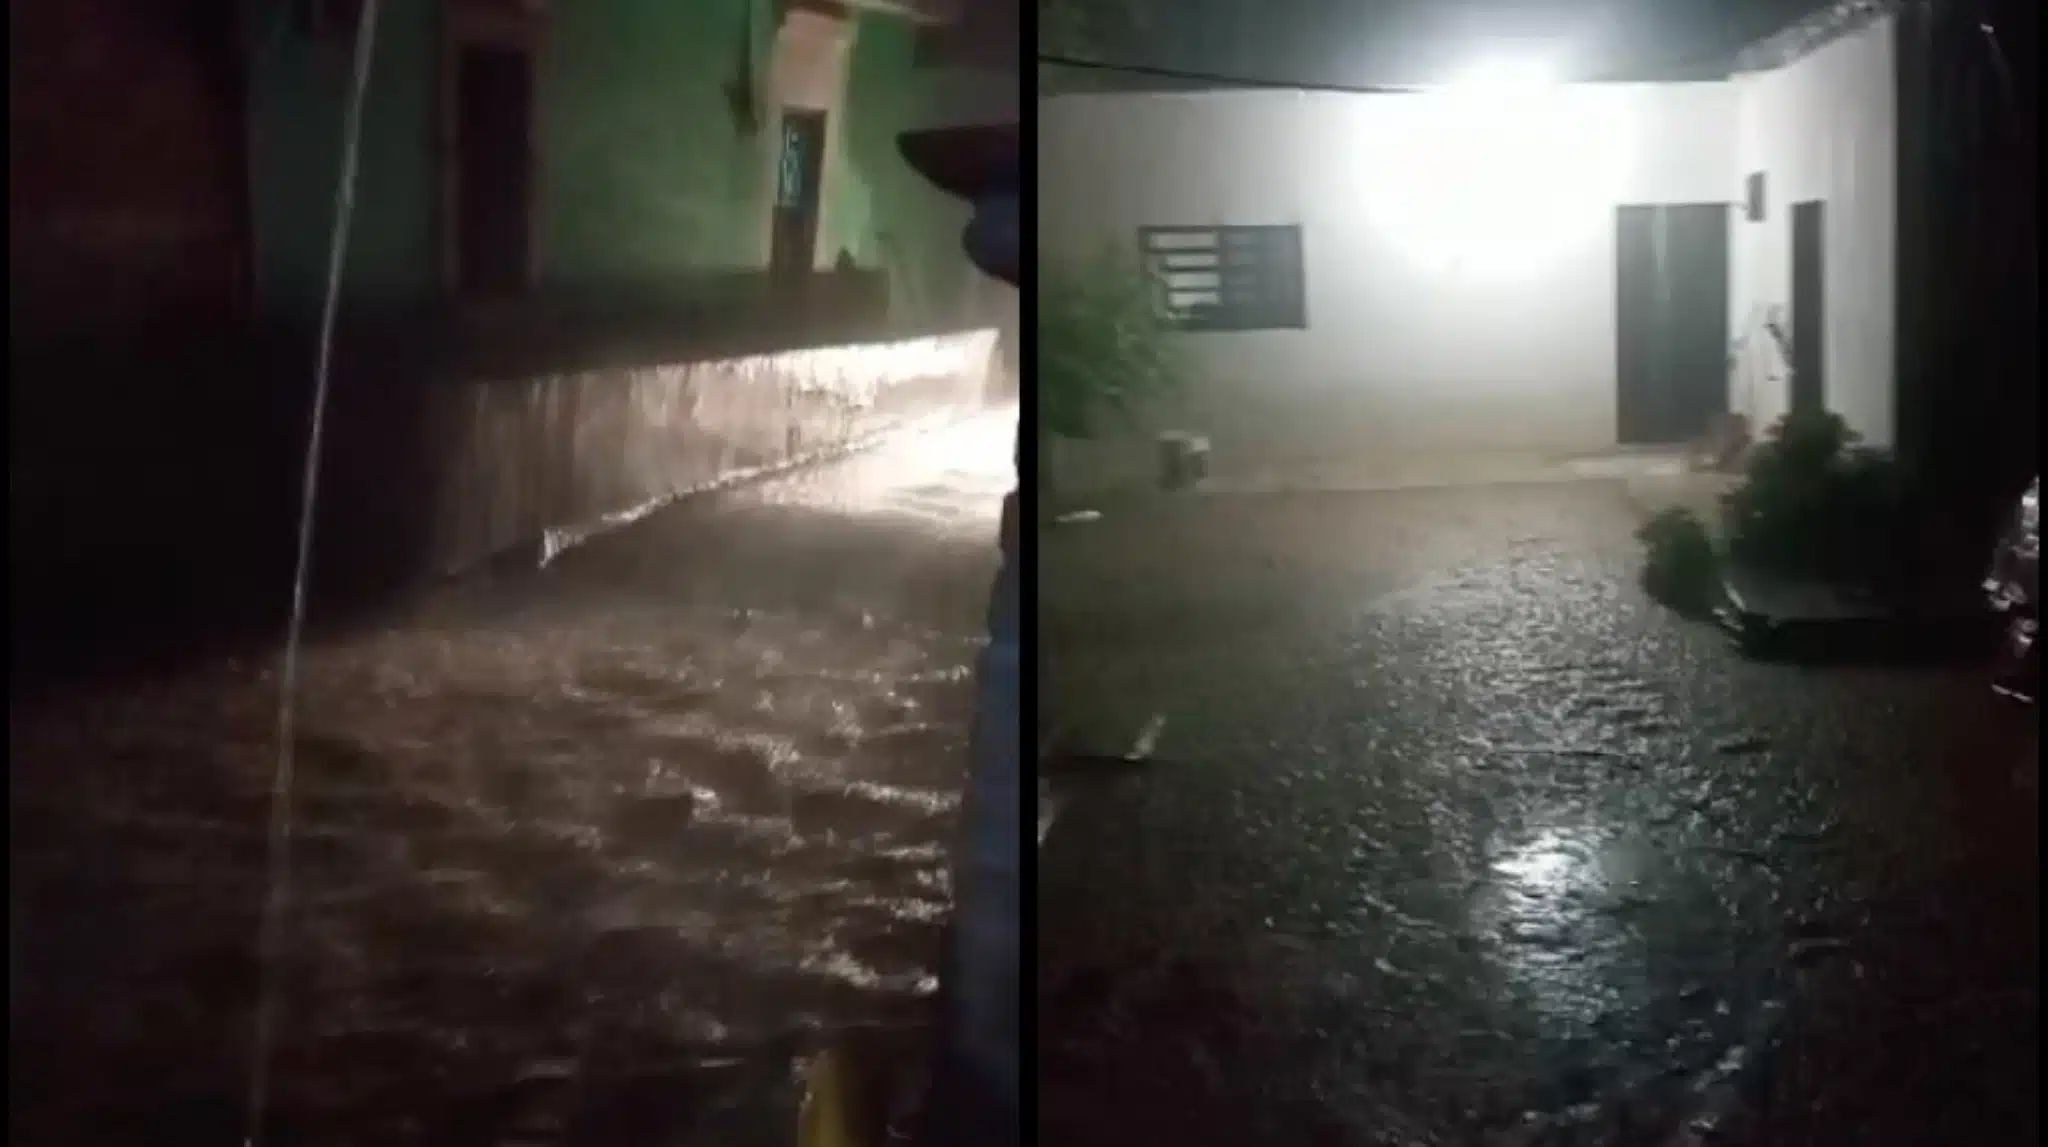 A la izquierda, calle inundada tras lluvias en Chinobampo. A la derecha, lluvias afuera de una casa.